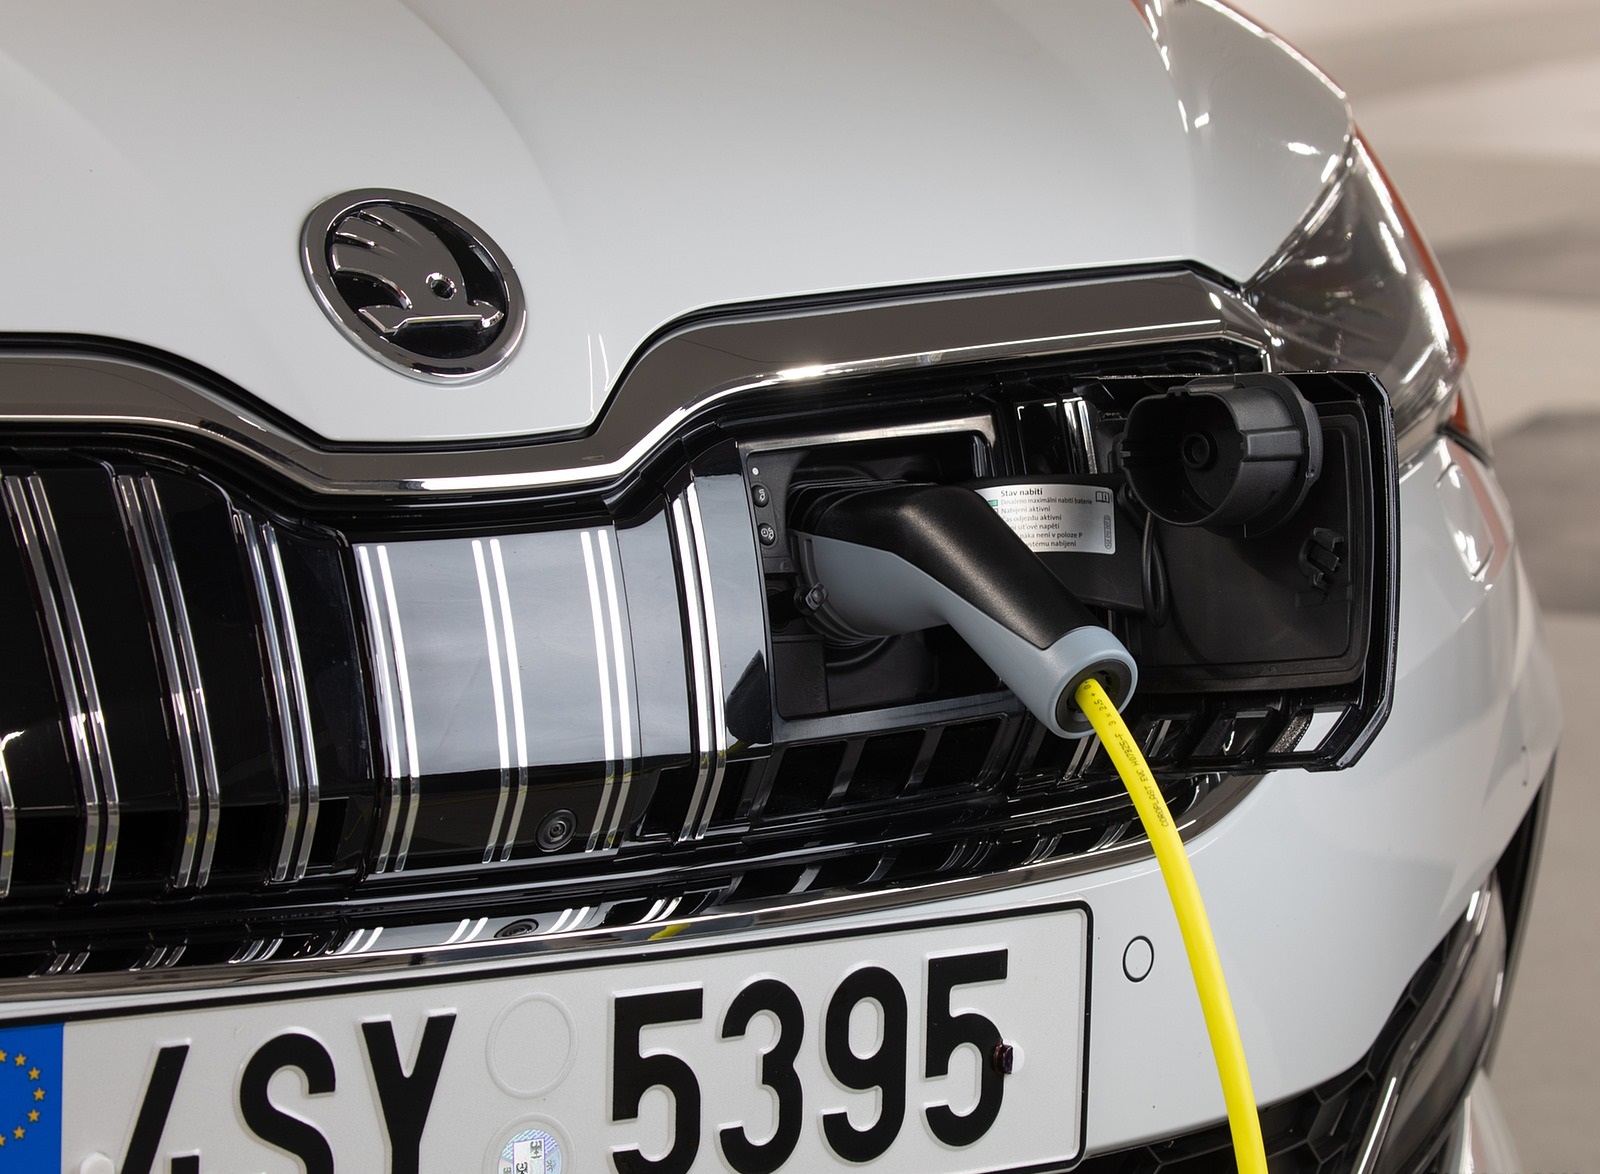 2020 Skoda Superb iV Plug-In Hybrid Charging Wallpapers #54 of 111